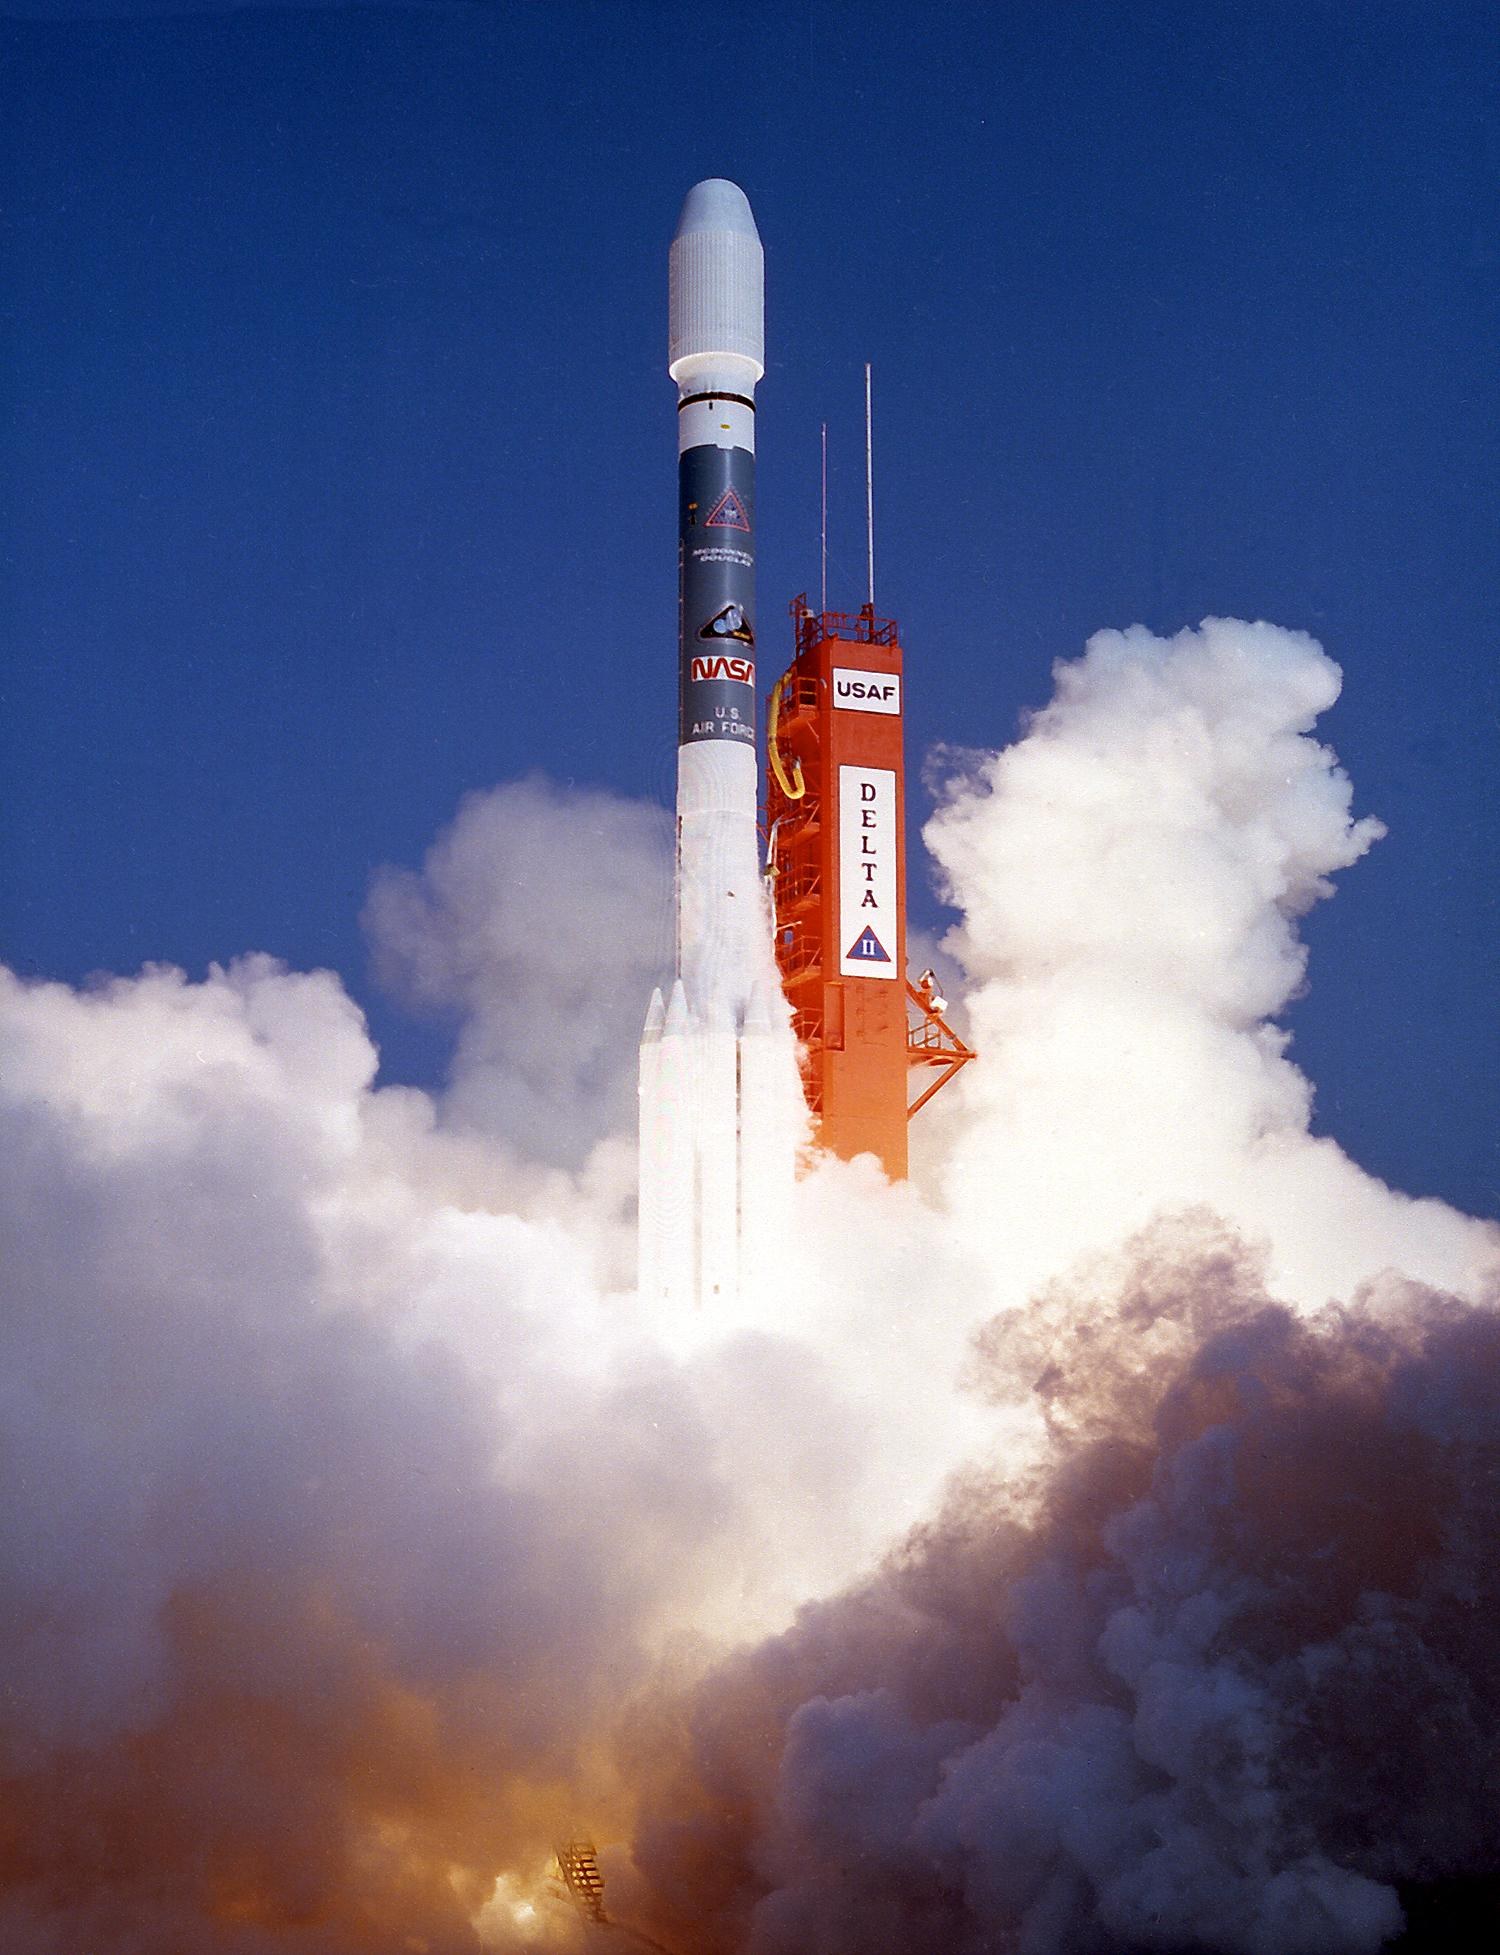 Rosat startete am 1. Juni 1990 an Bord einer Delta-II-Rakete von Cape Canaveral